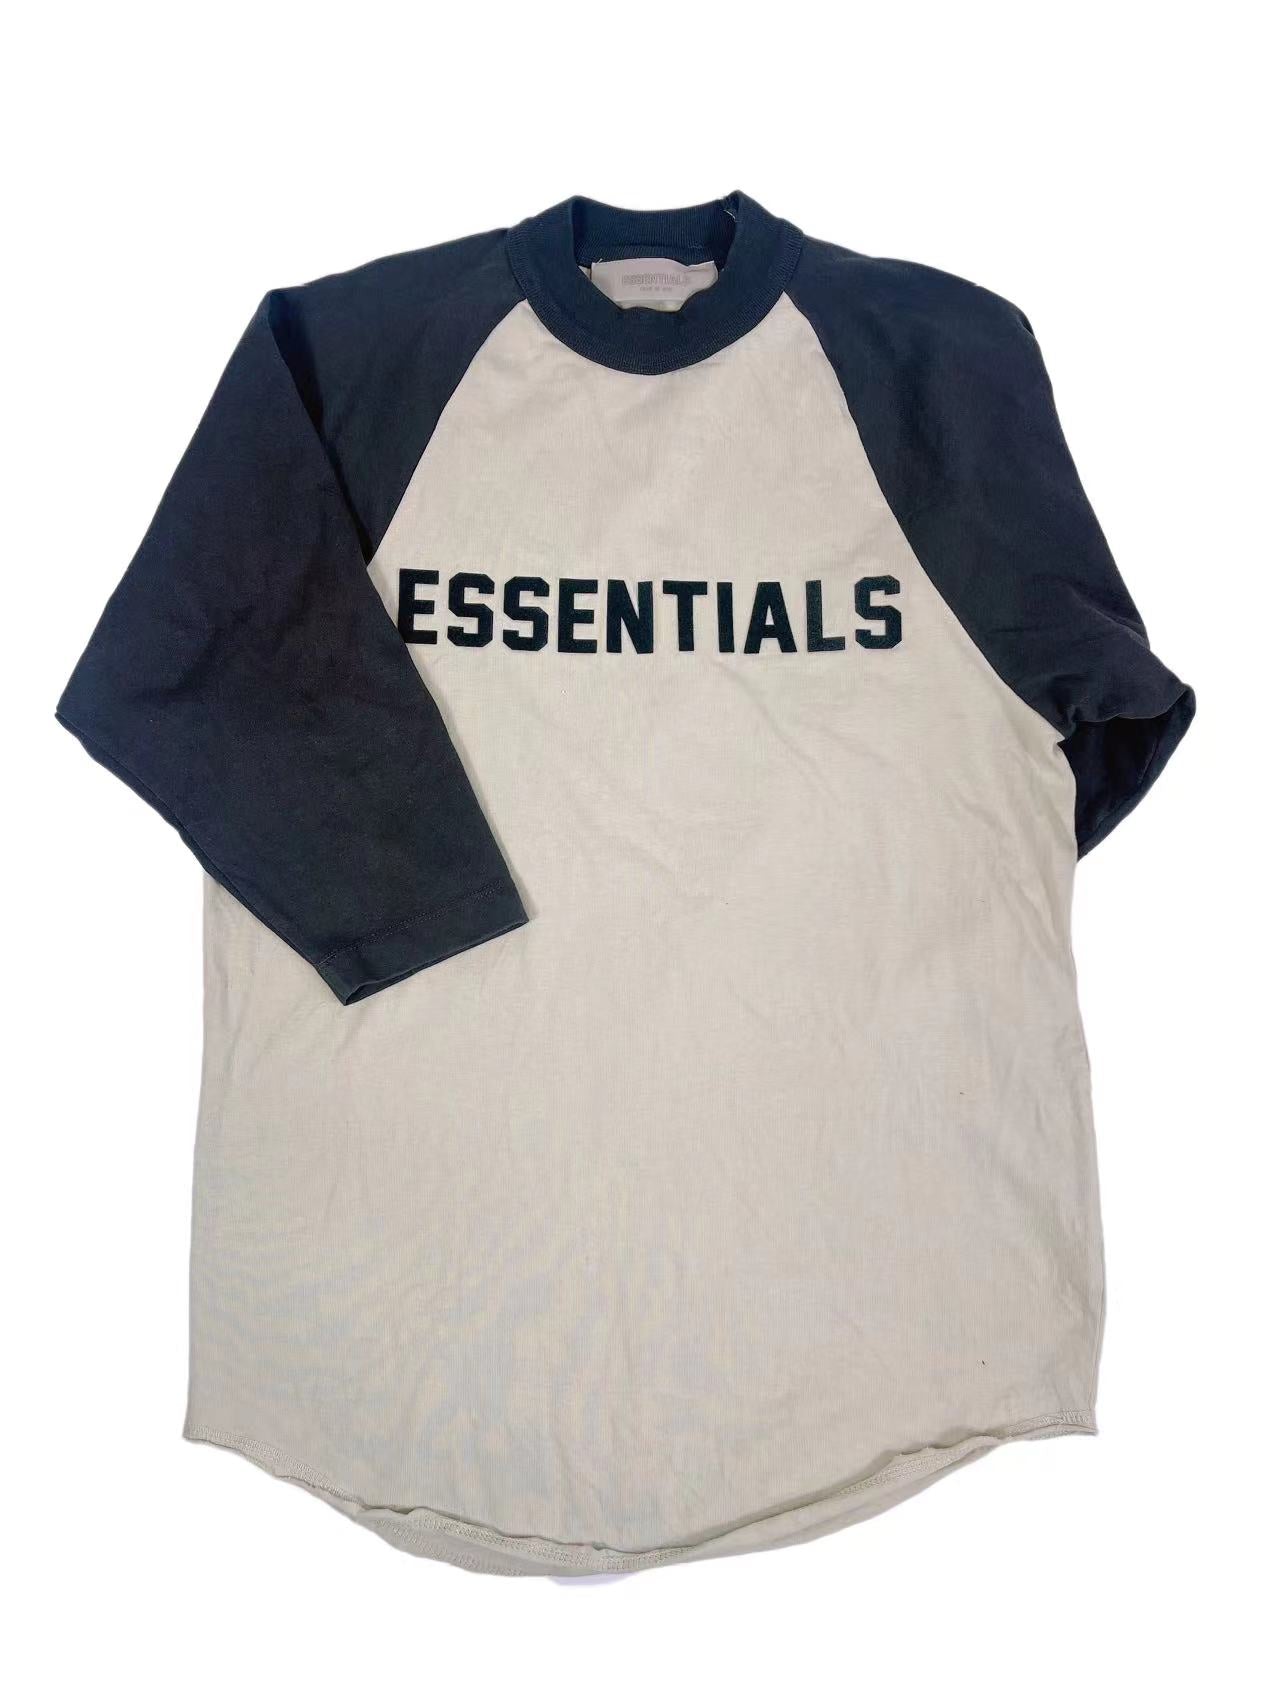 Essentials DressShirt(8Y)